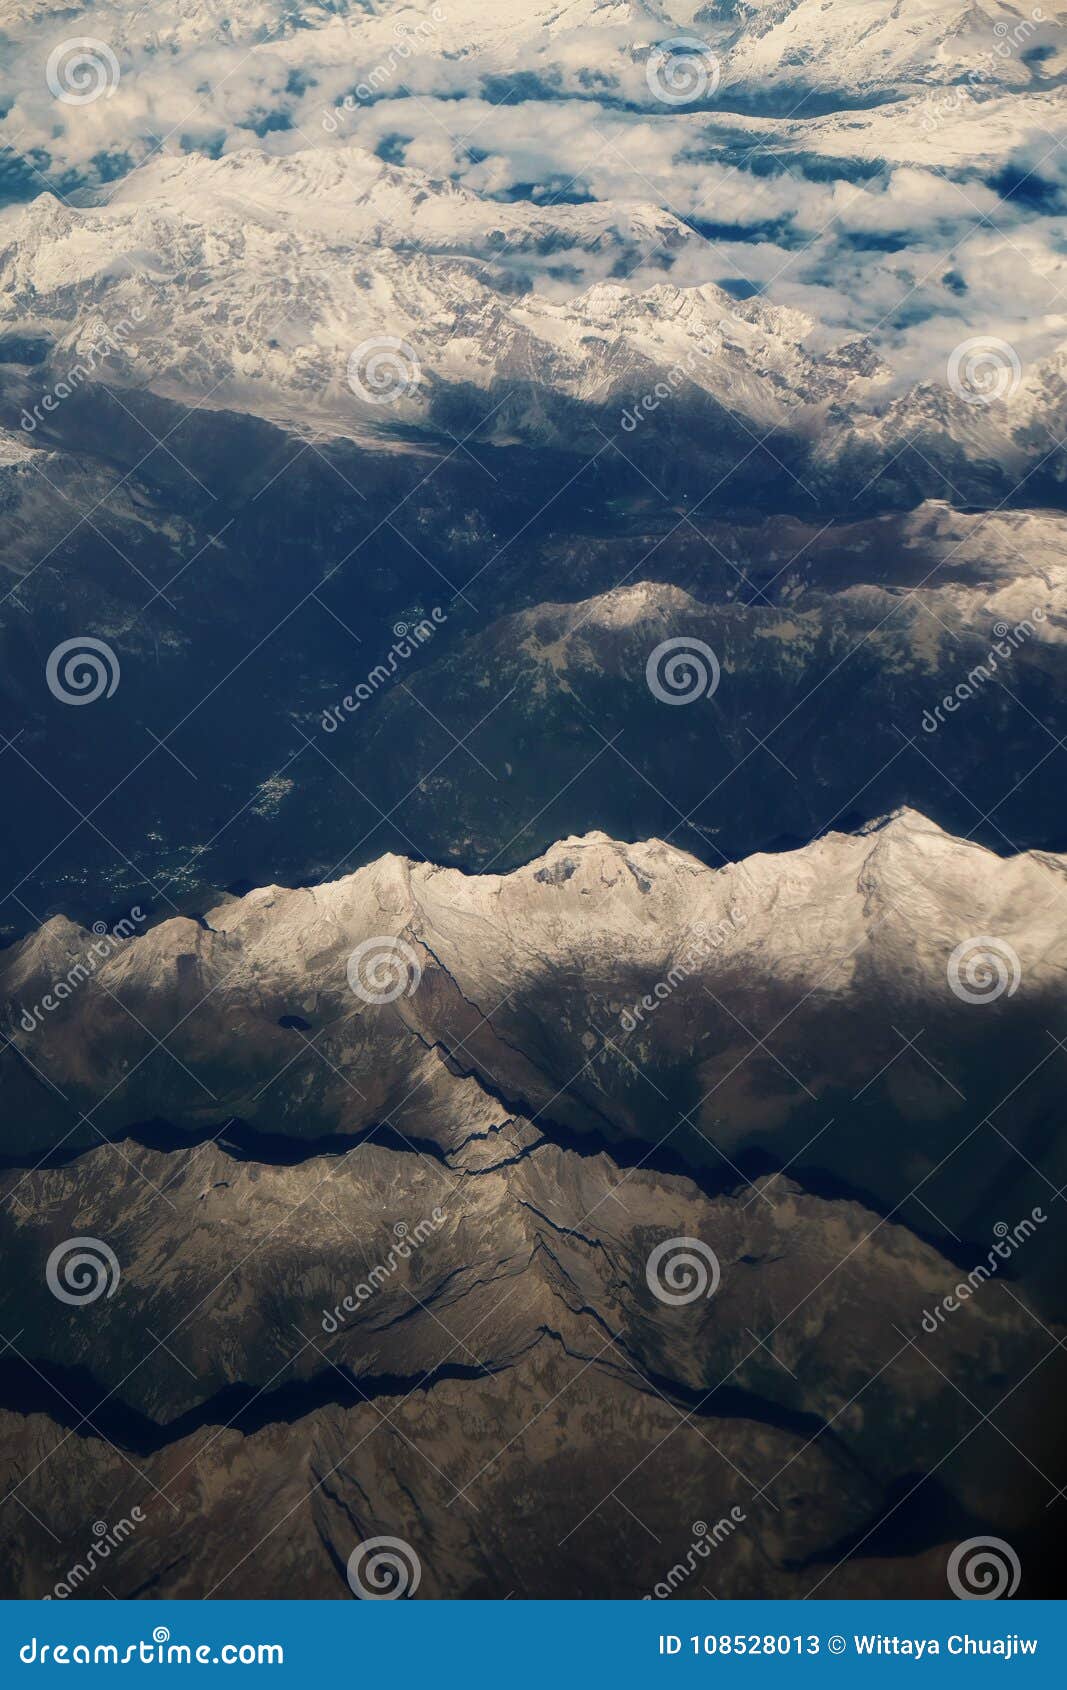 Il Mountain View blu delle alpi dal cielo. La montagna blu delle alpi coperta di neve con la vista dal cielo